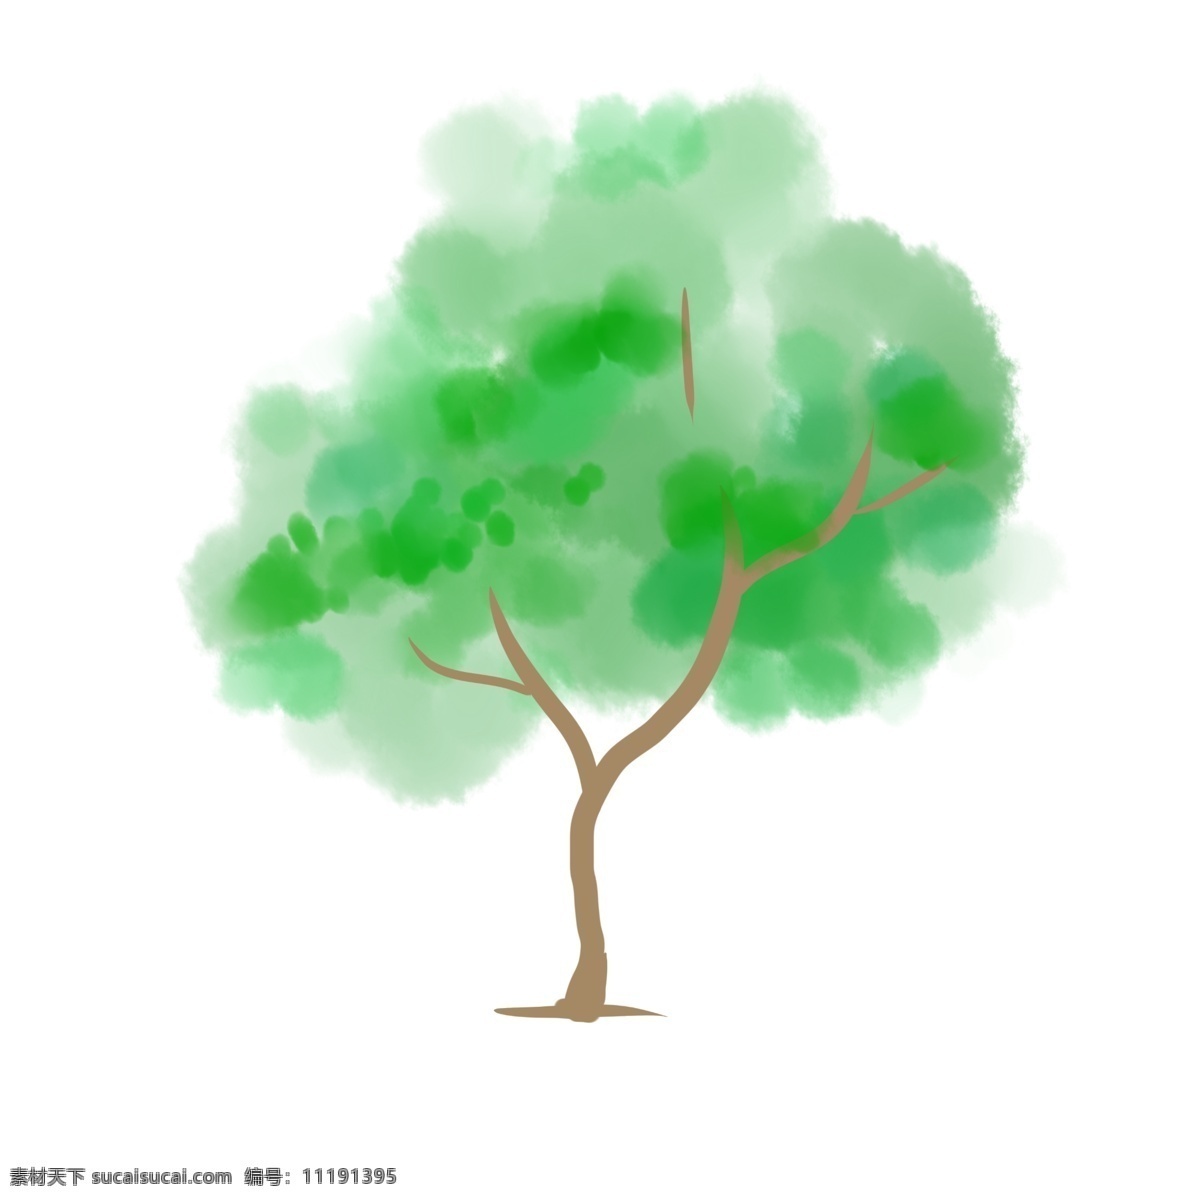 矢量图 成长 大树 成长大树 绿色 环保 夏季 树荫 清新